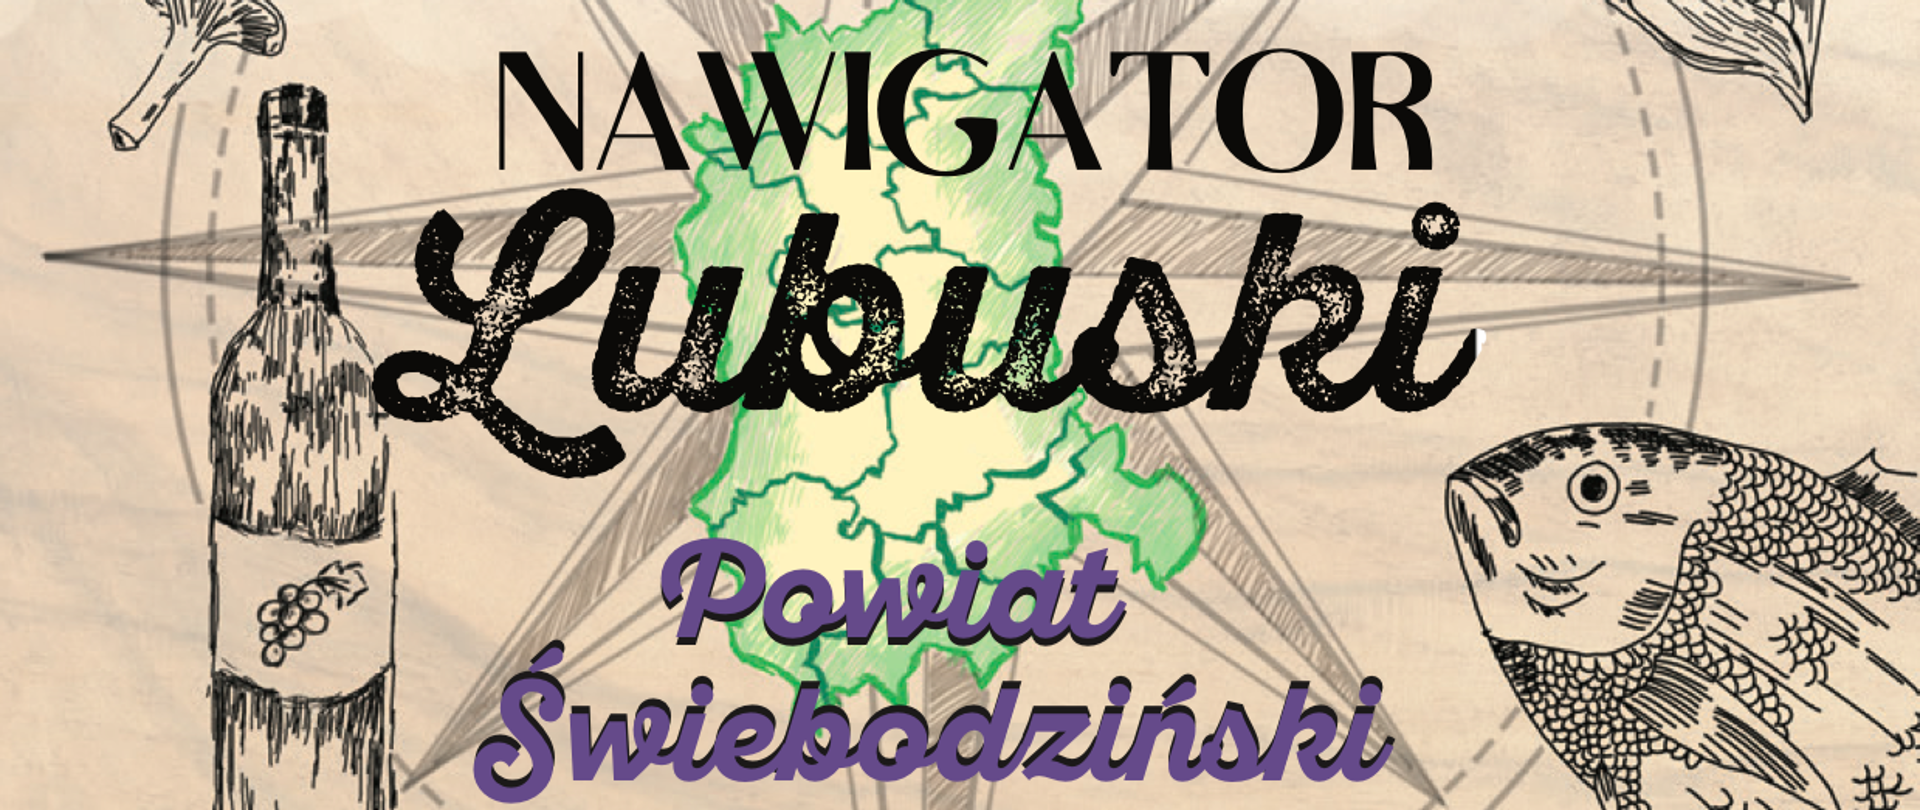 plakat z napisem Nawigator Lubuski - Powiat Świebodziński